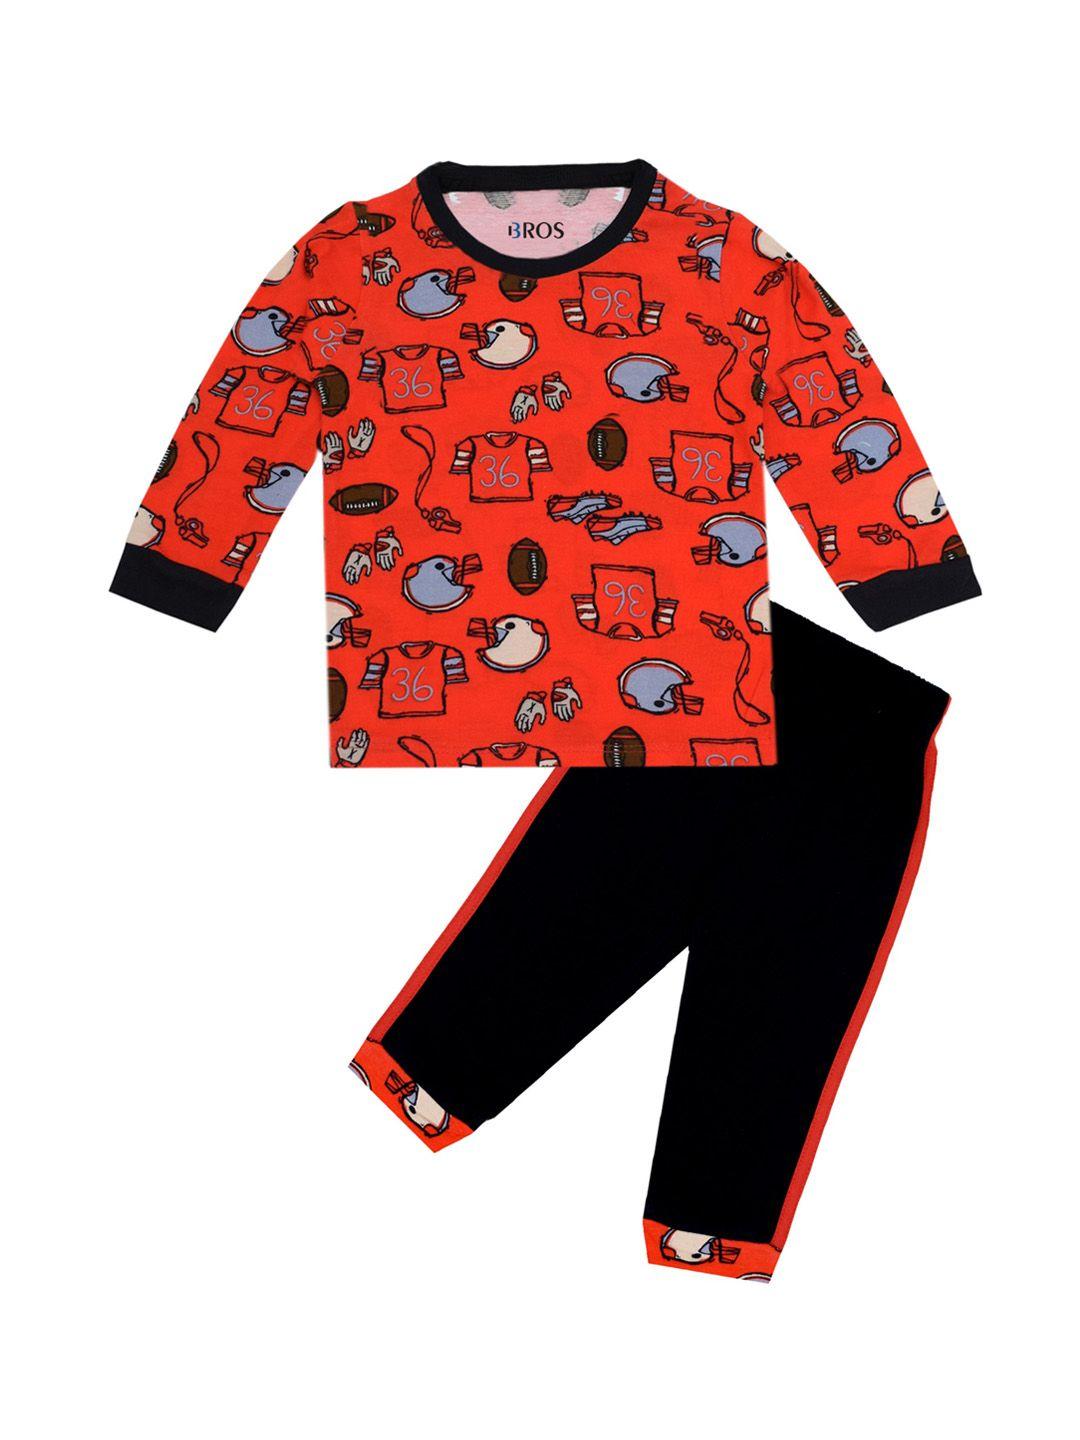 3bros-unisex-kids-red-&-black-printed-t-shirt-with-pyjamas